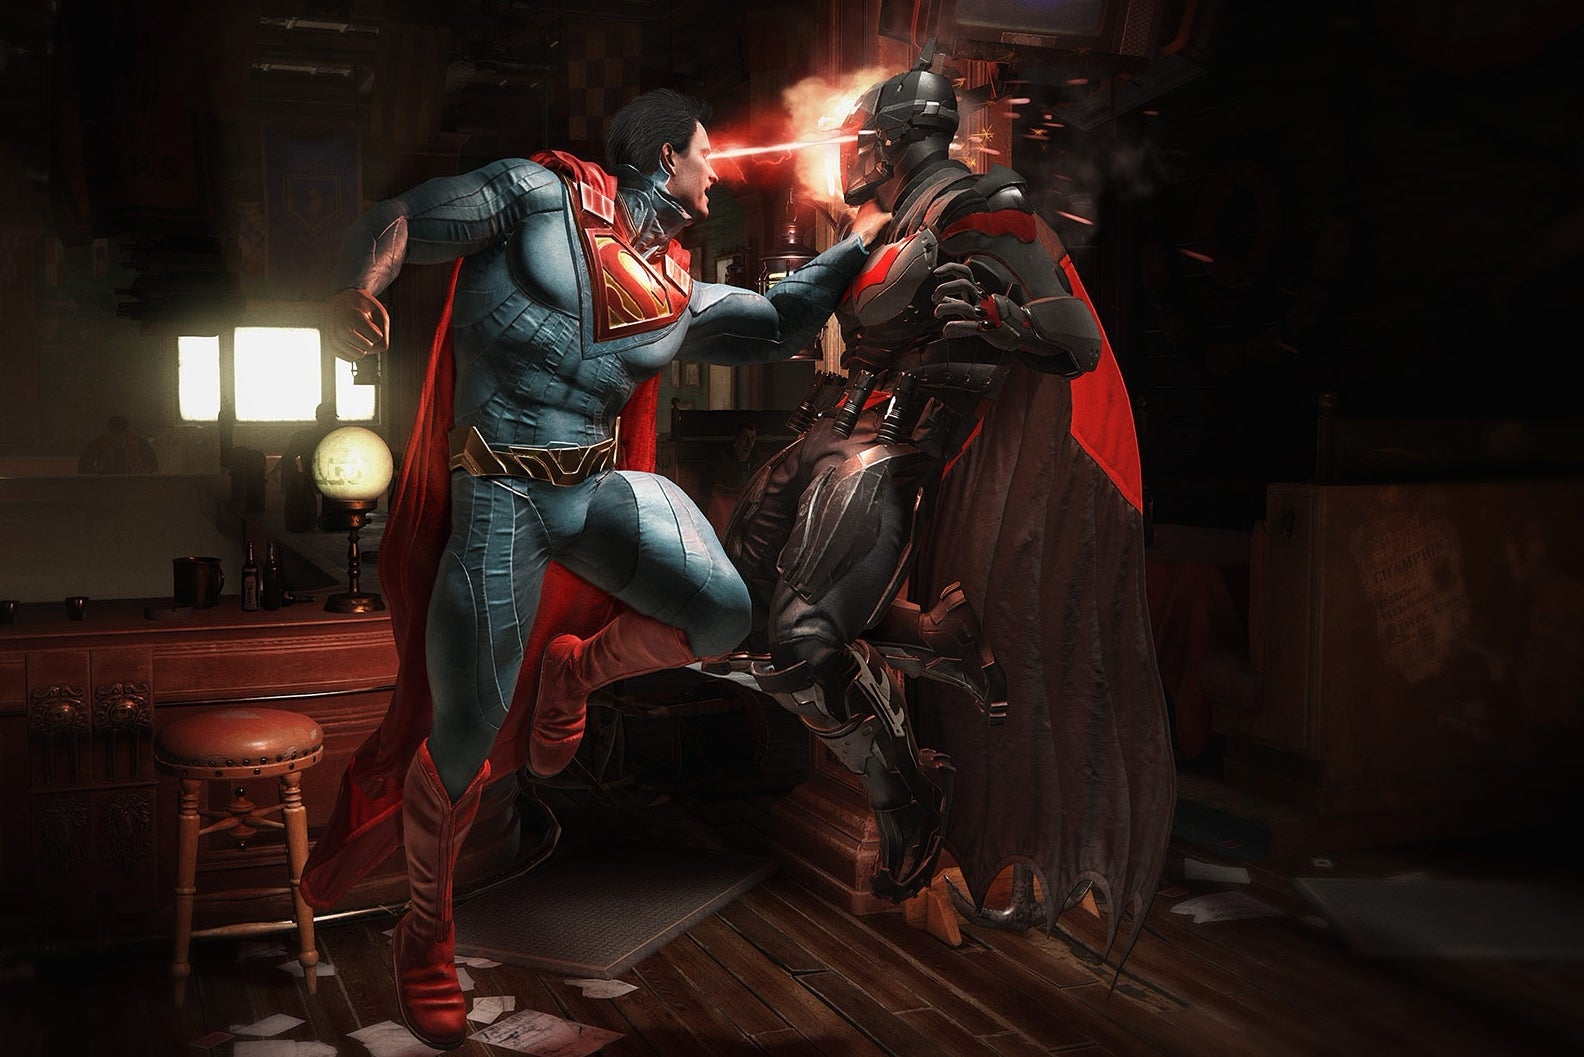 Immagine di Injustice 2: le versioni Xbox One X e PS4 Pro a confronto in un video